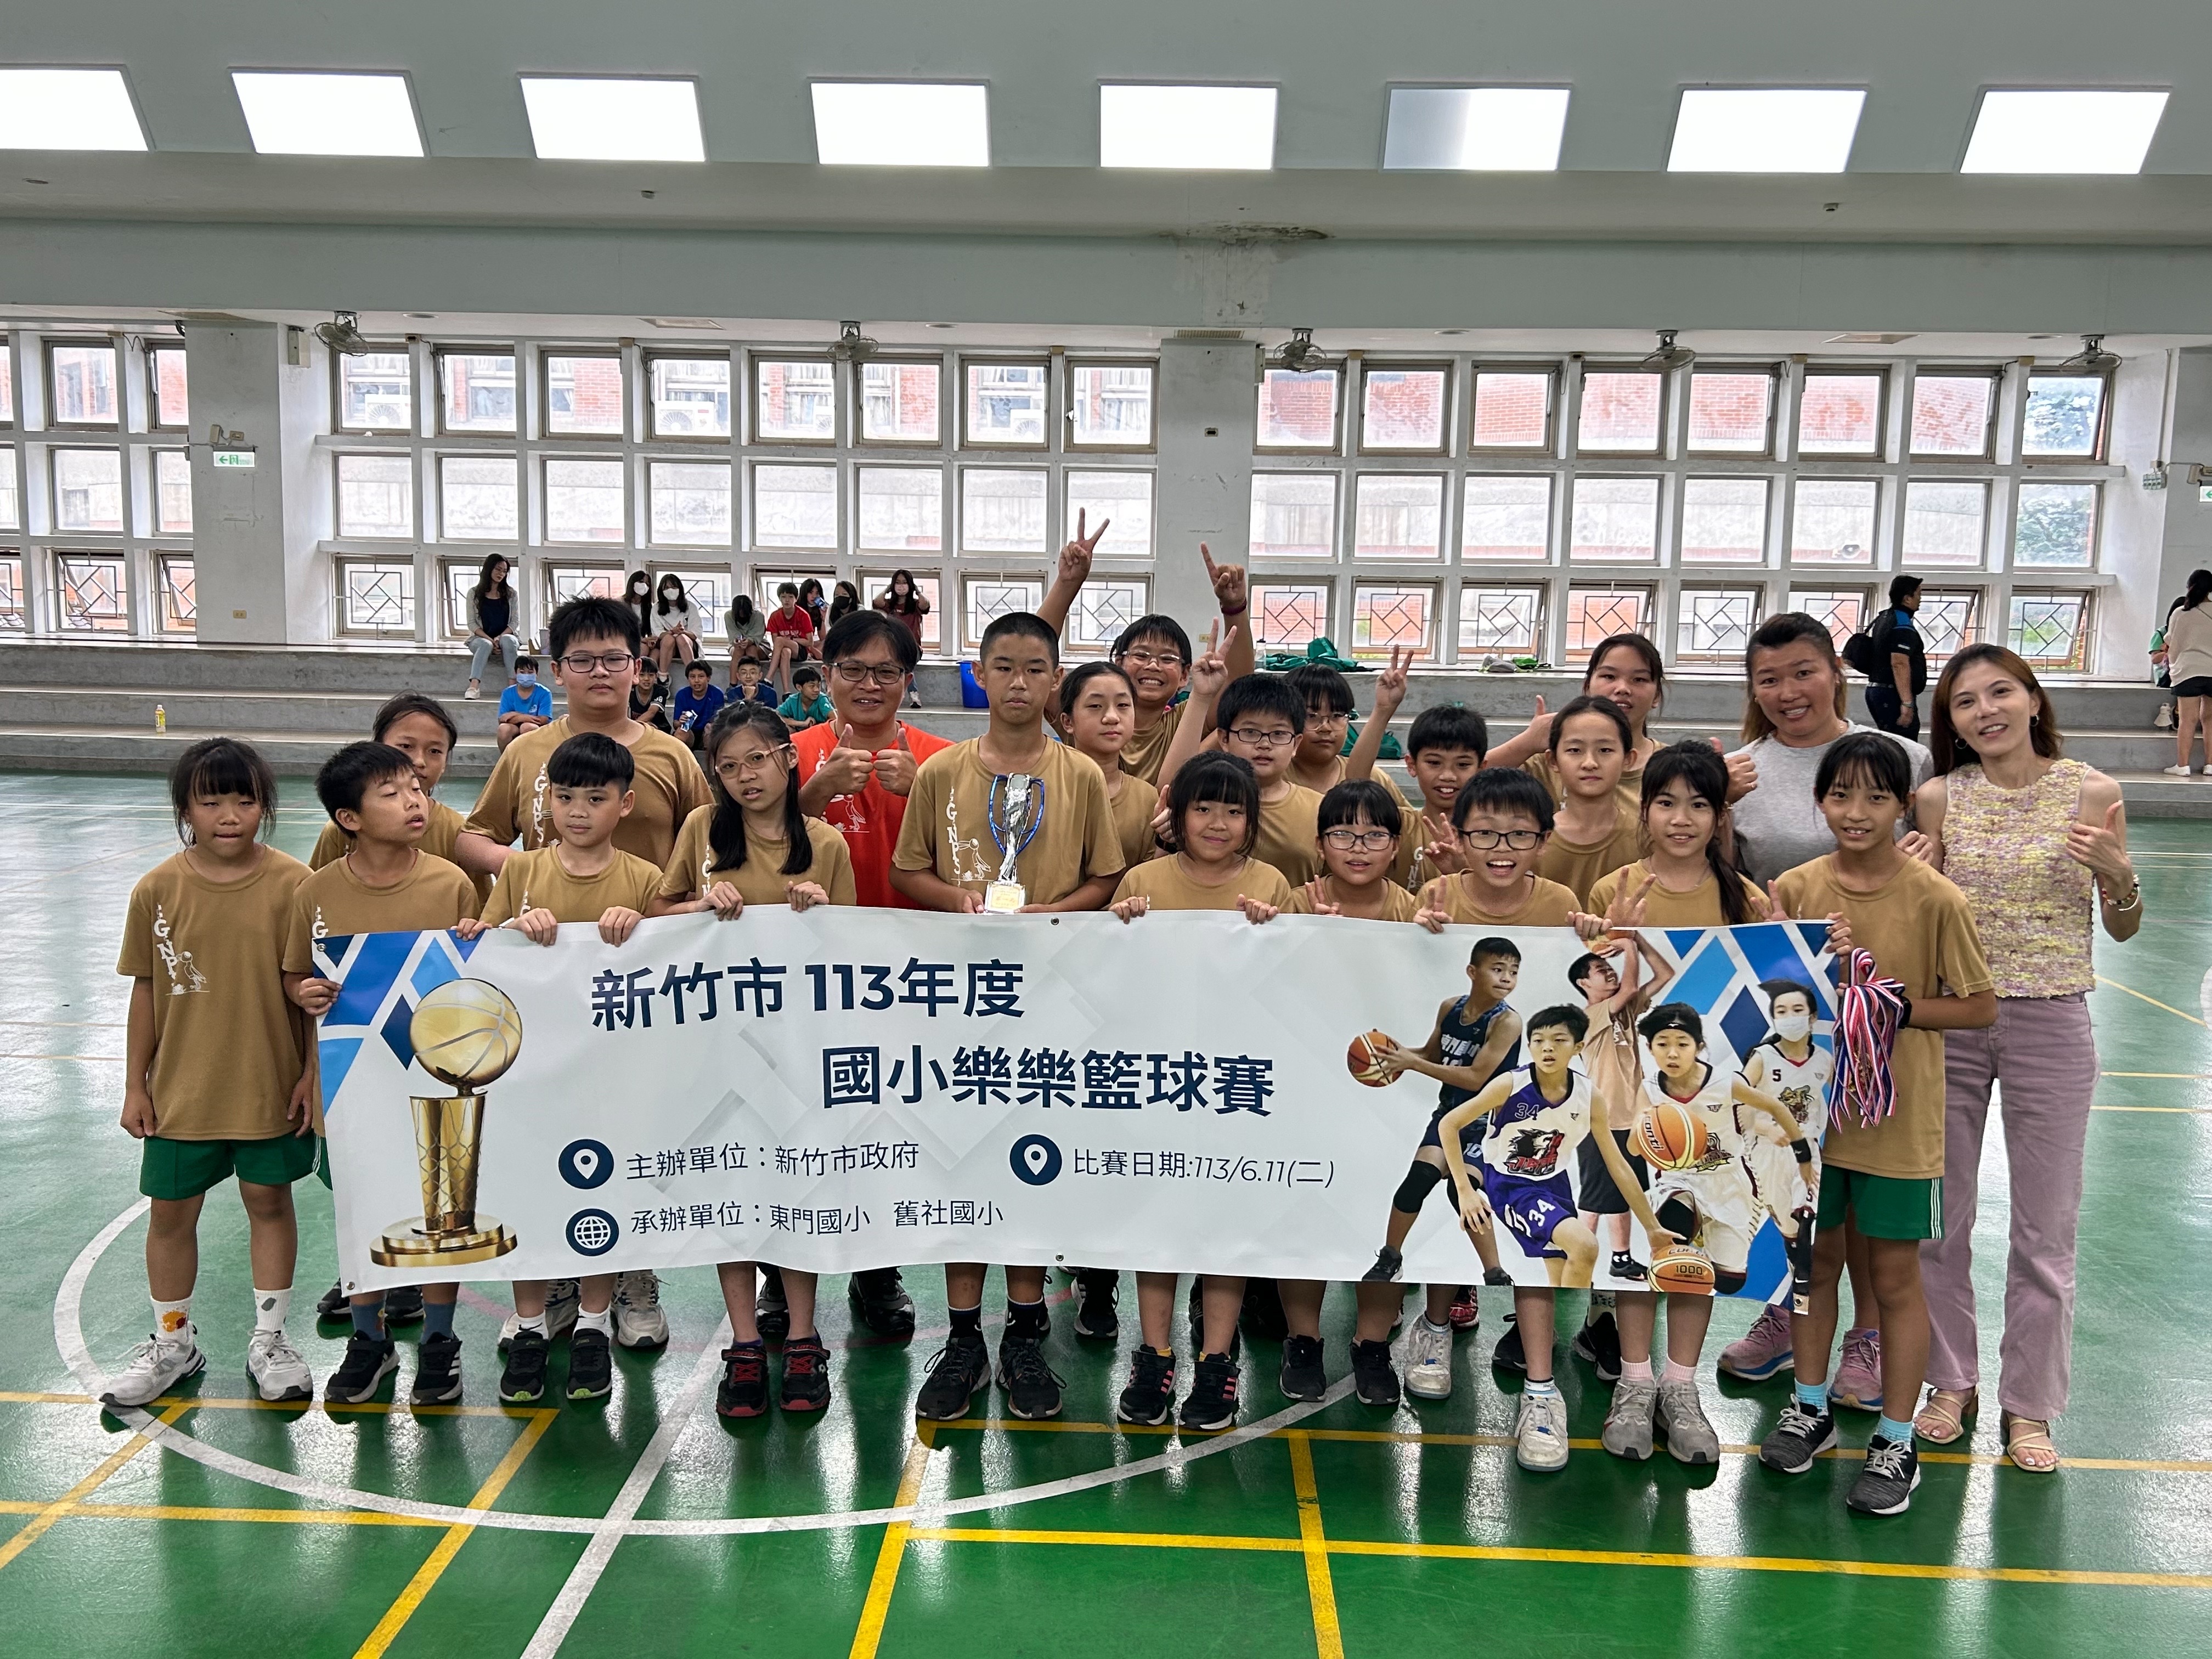 新竹市113年普及化樂樂籃球-國小五年級組第一名活動照片